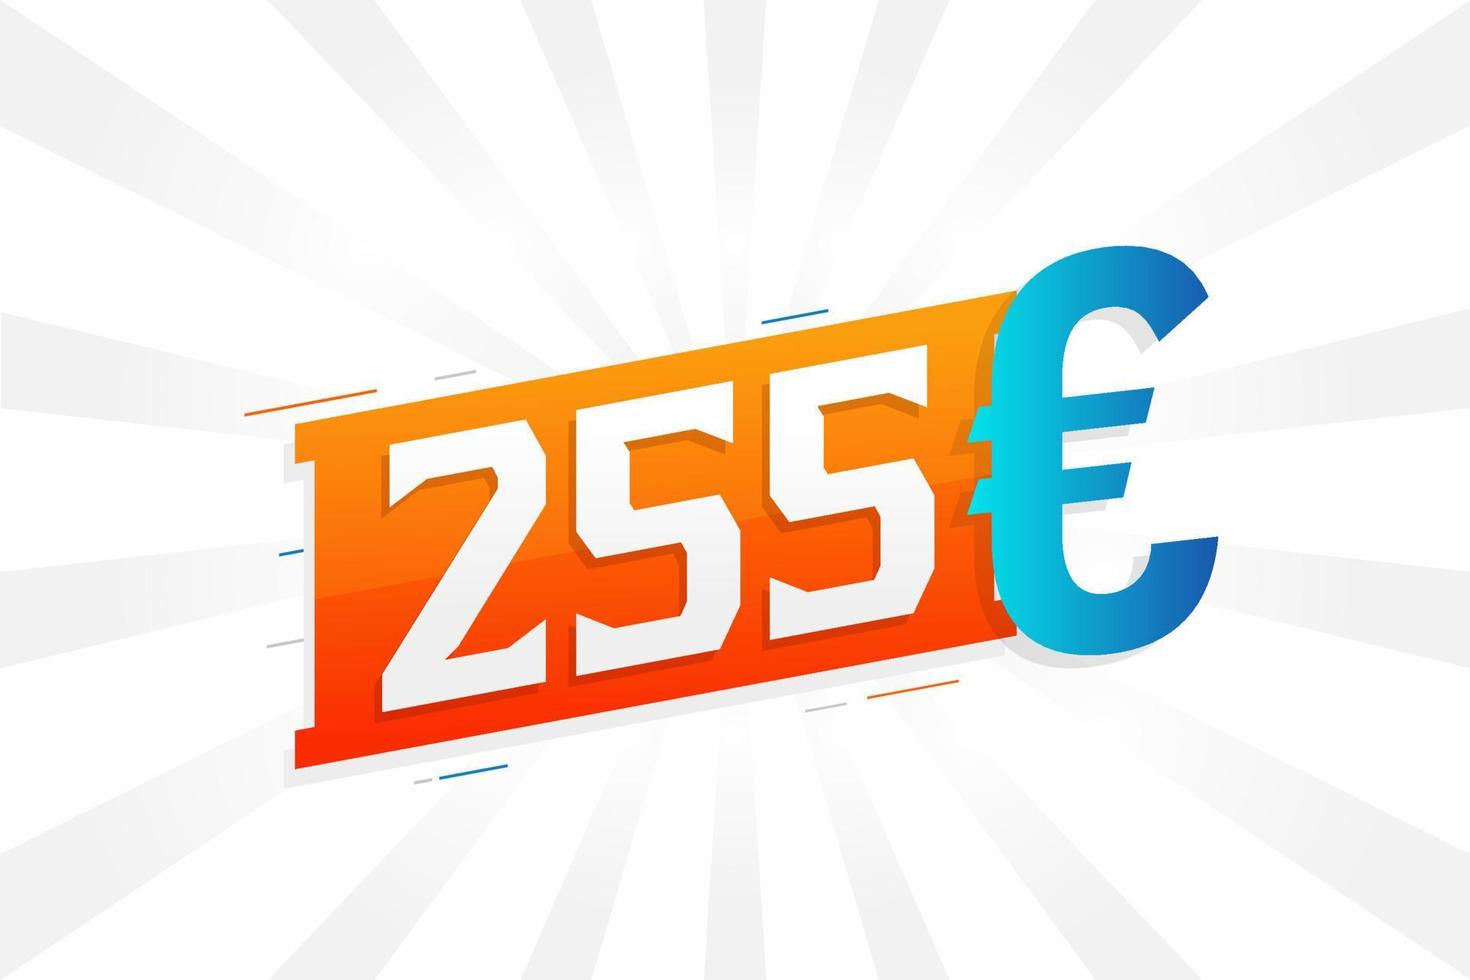 255 euro valuta vector tekst symbool. 255 euro Europese unie geld voorraad vector